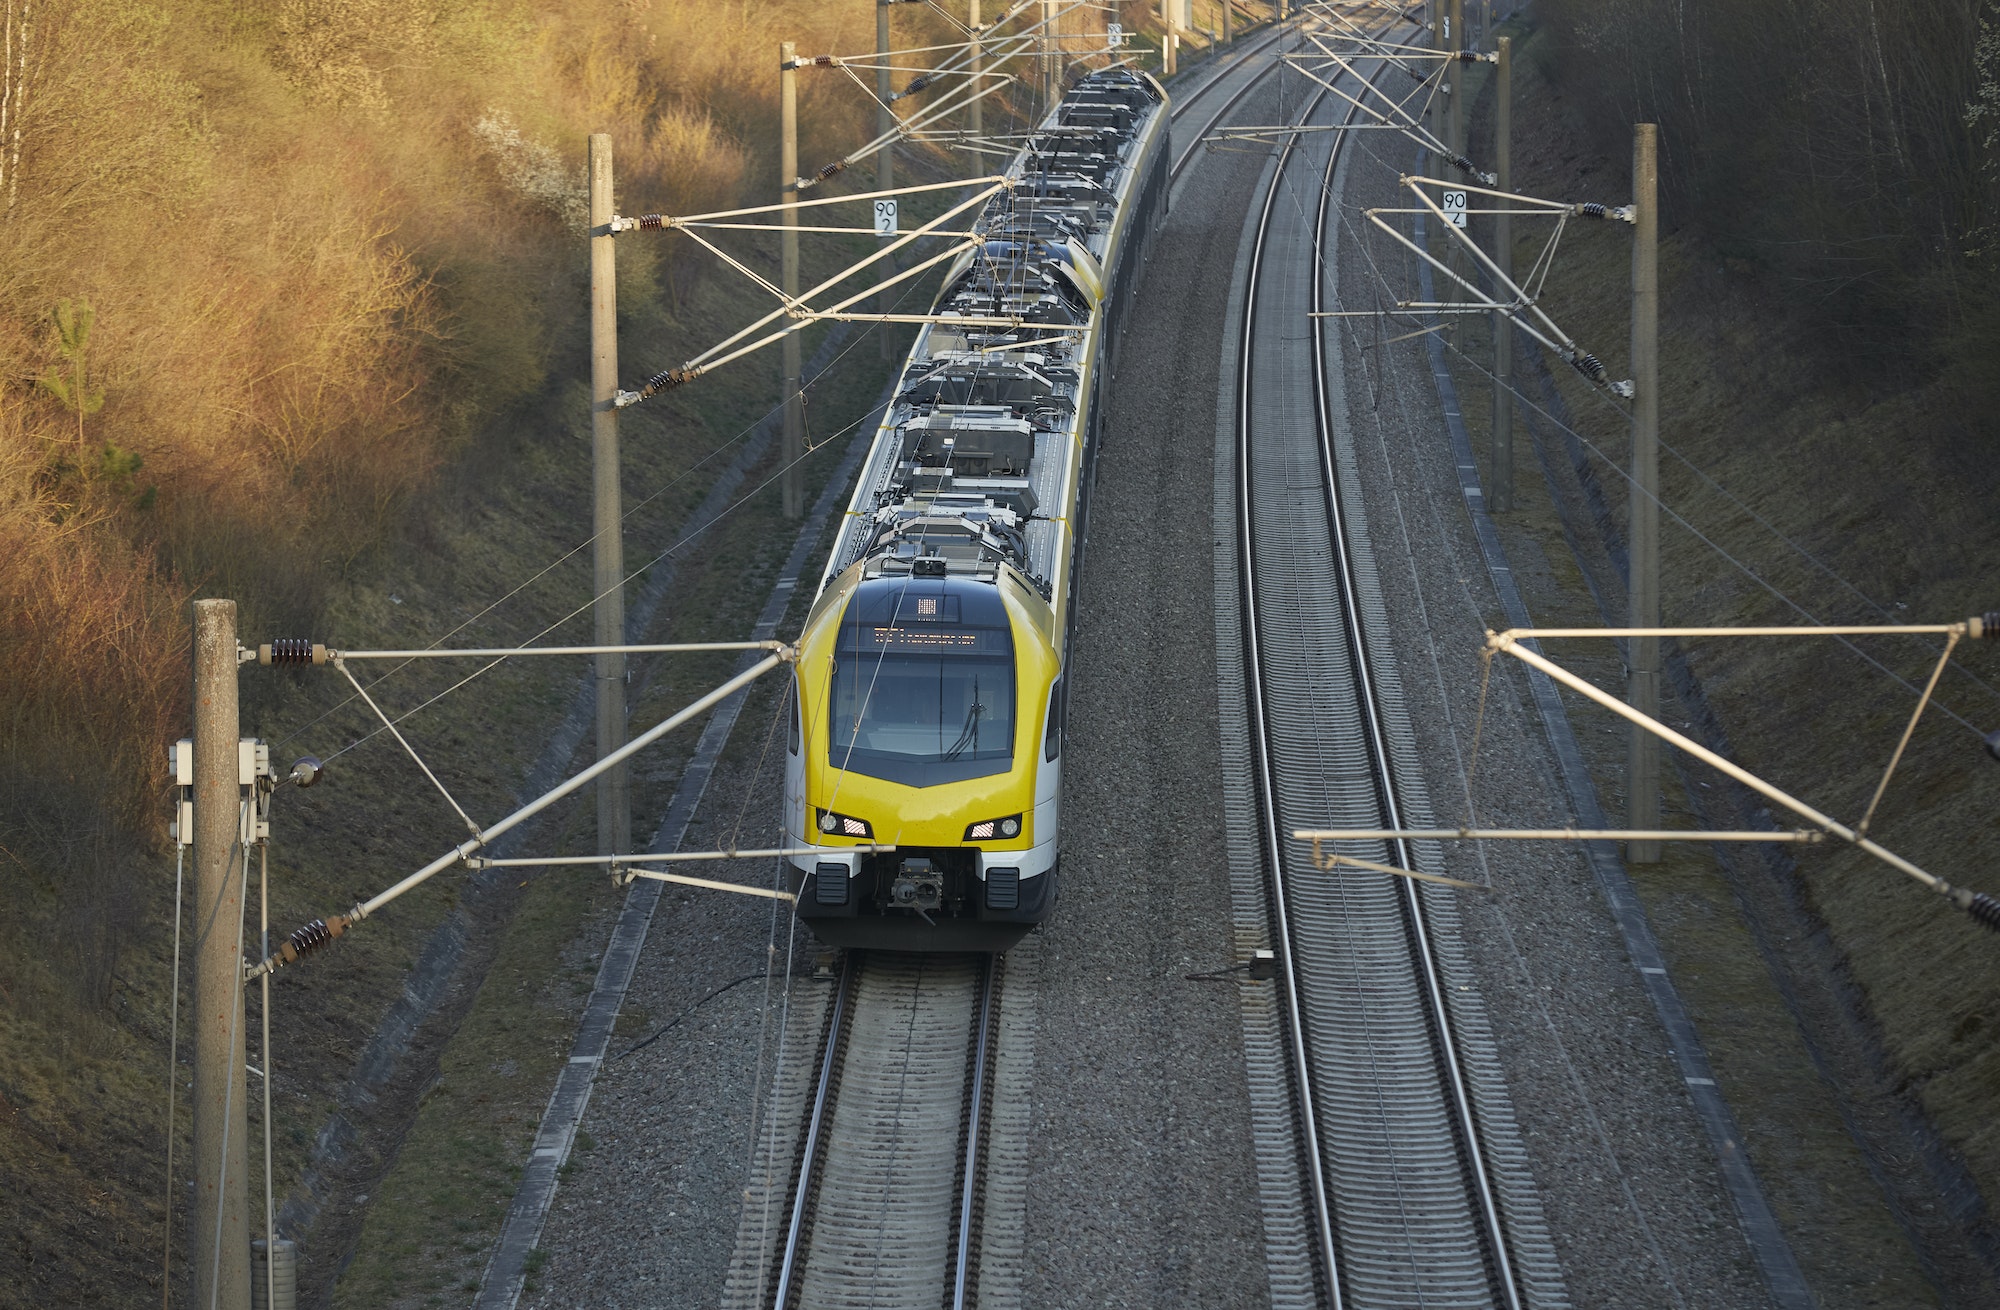 Le TGV : Révolution des transports ferroviaires